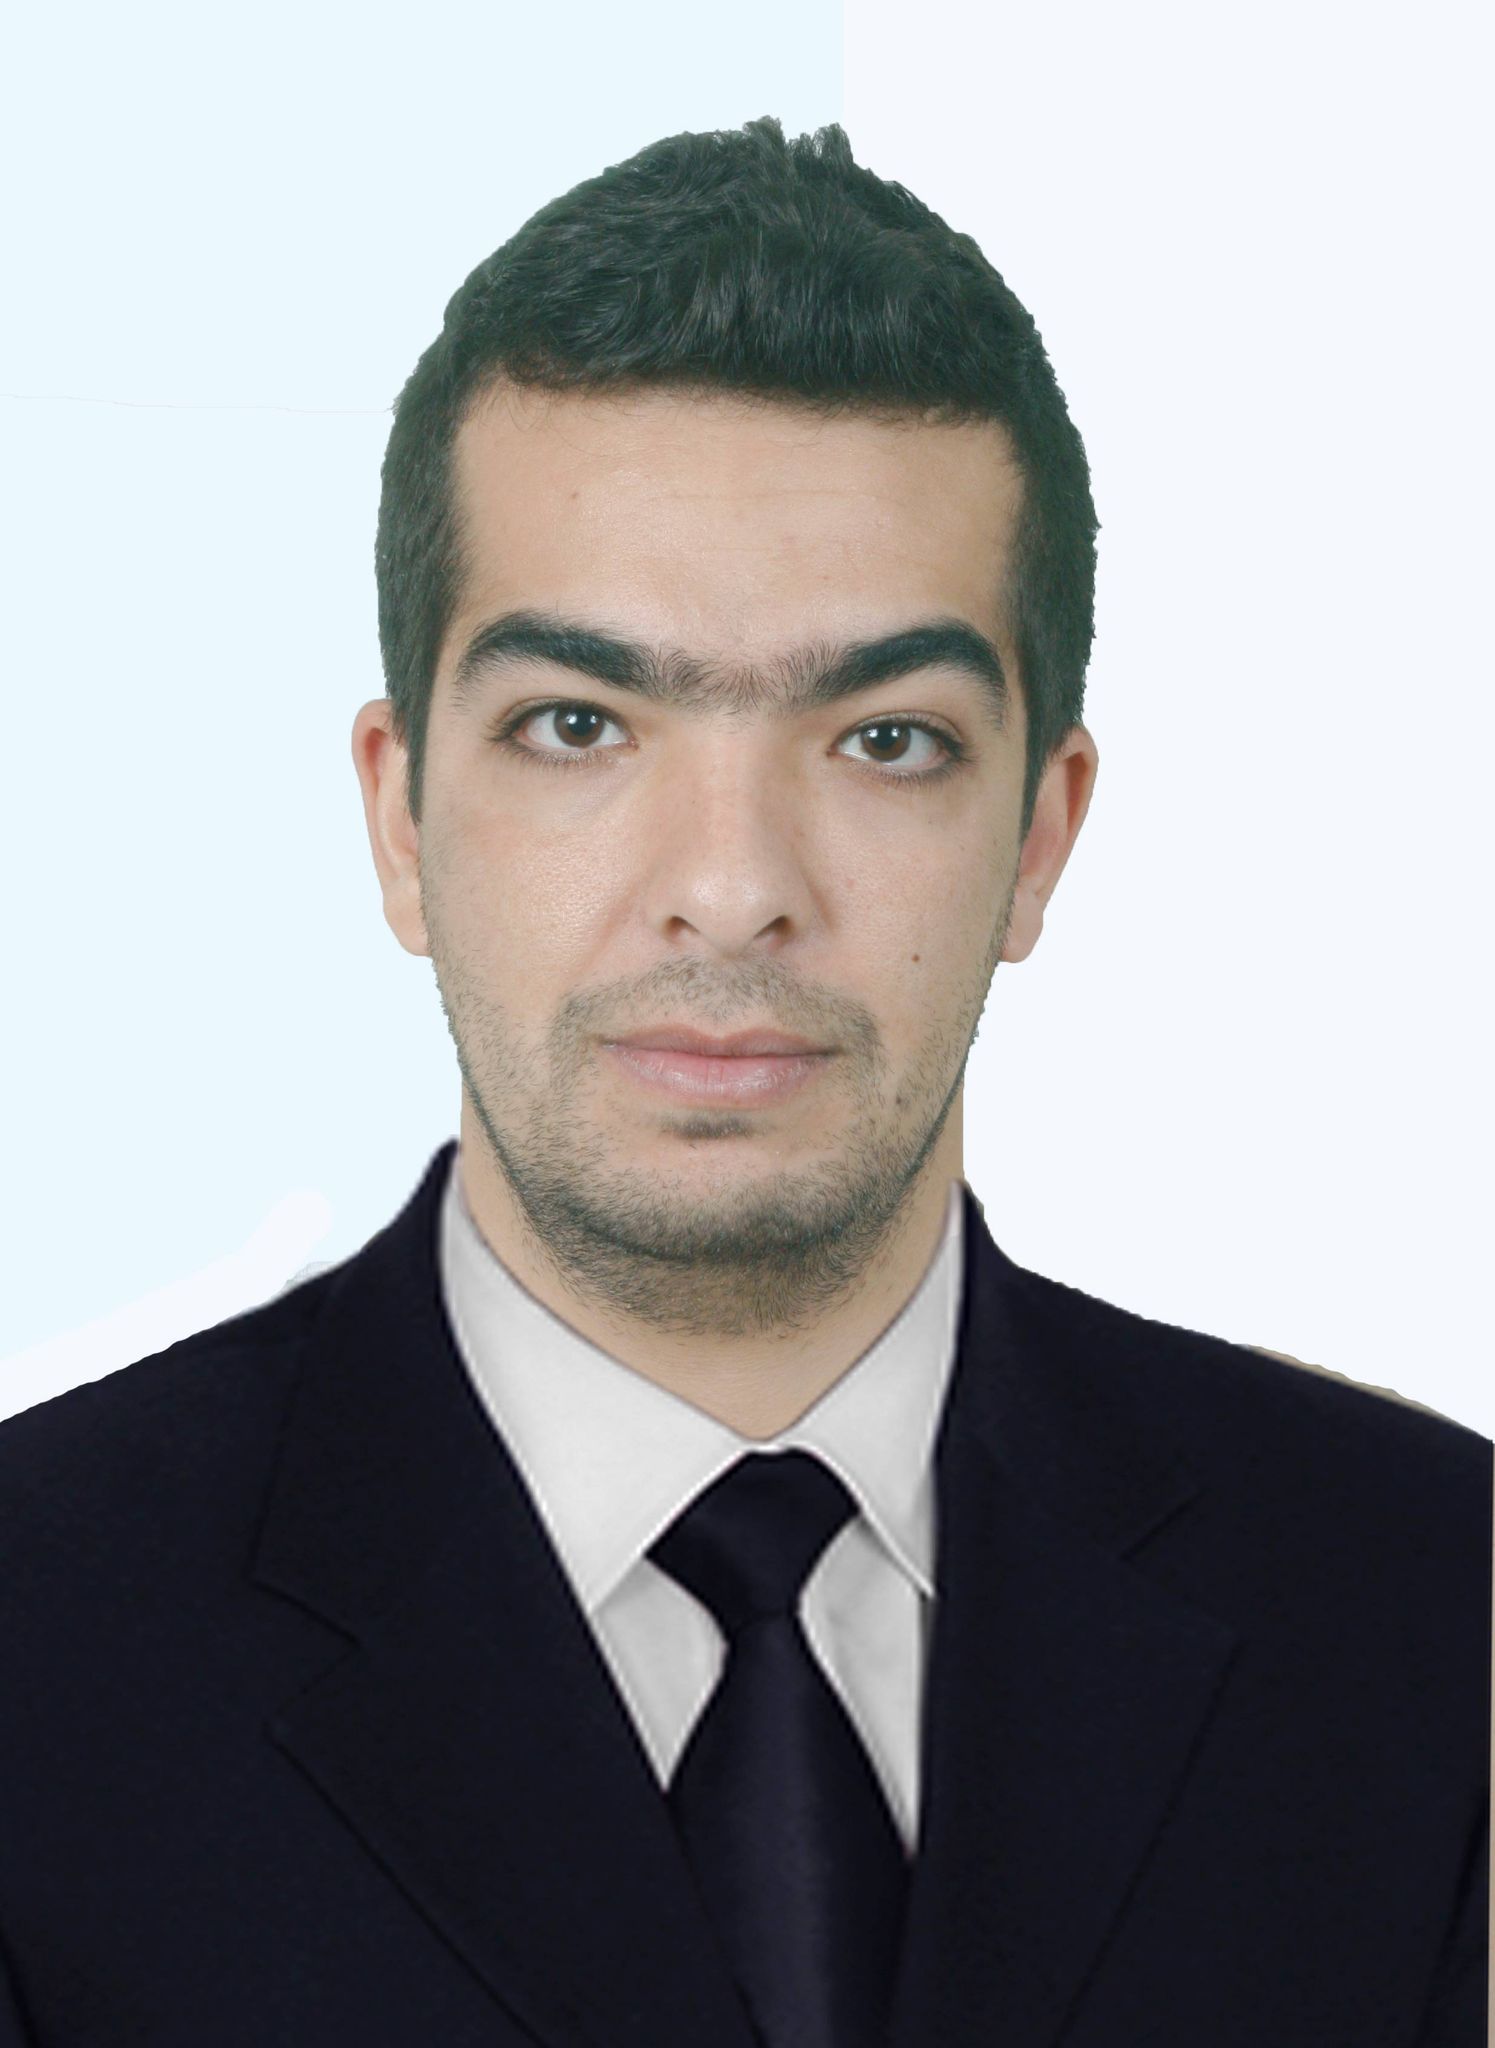 Dr. Souidi Mohammed El Habib